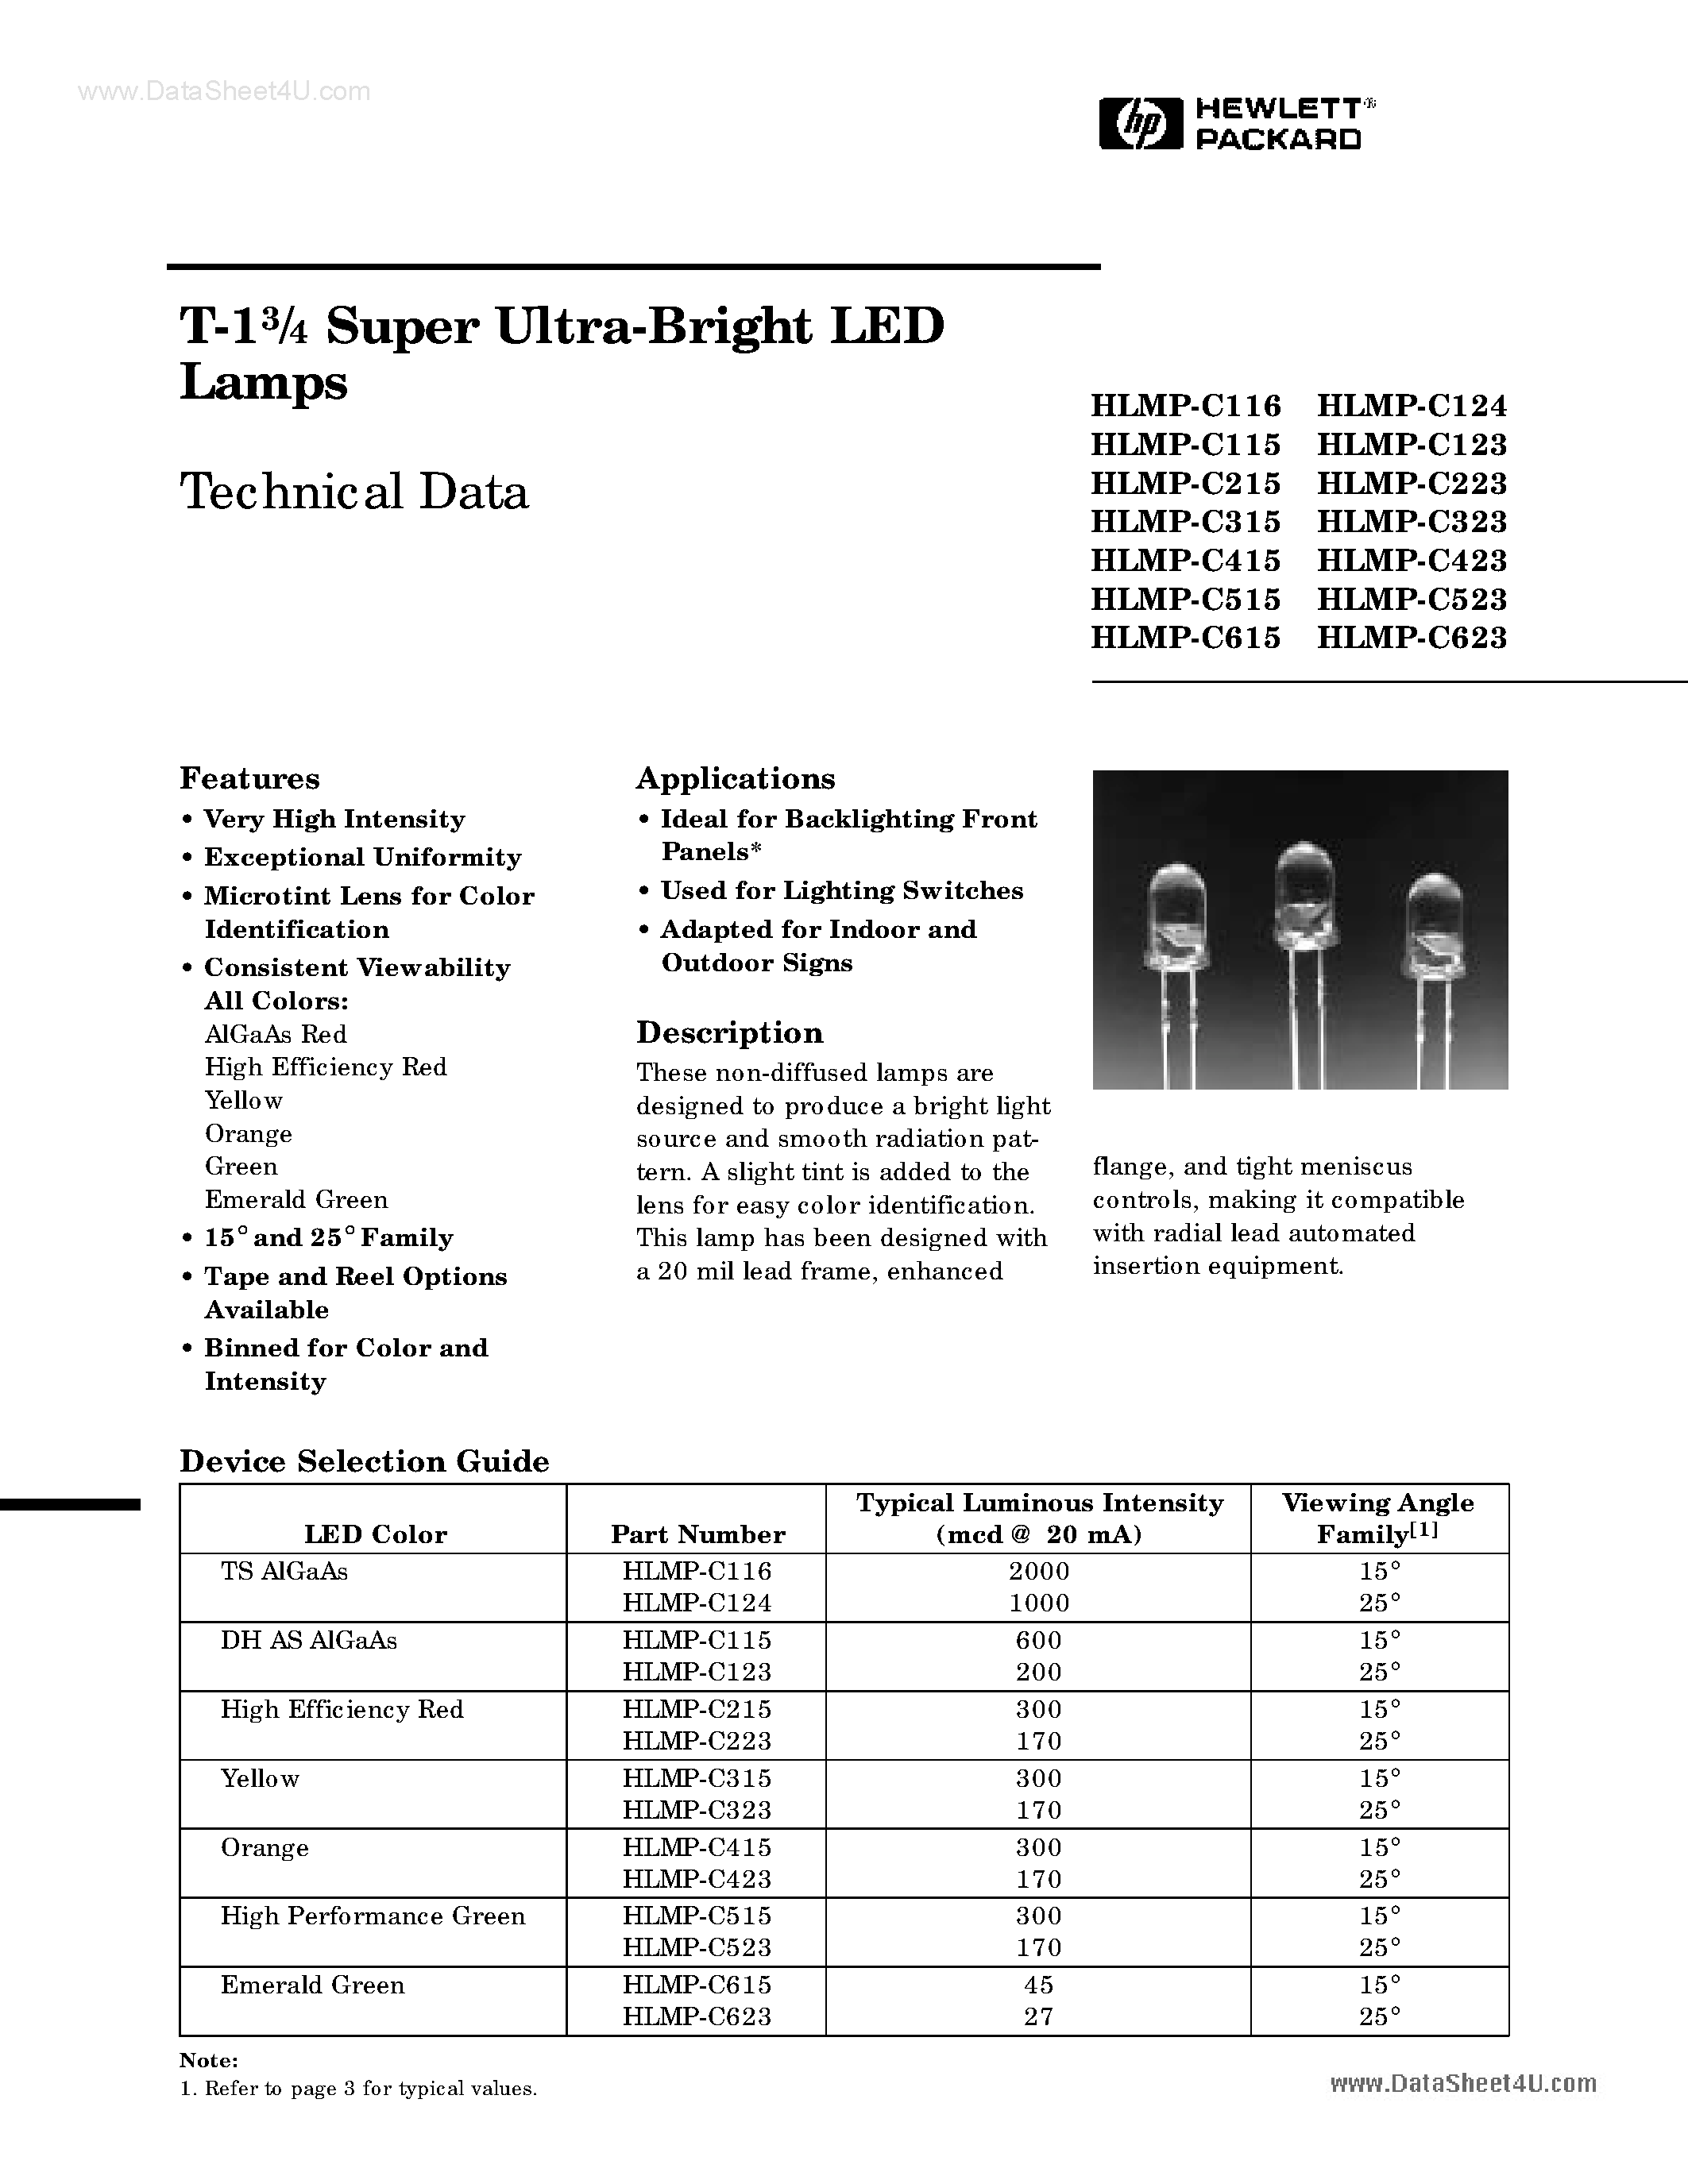 Даташит HLMP-C115 - (HLMP-Cxxx) T-13/4 Super Ultra-Bright LED Lamps страница 1